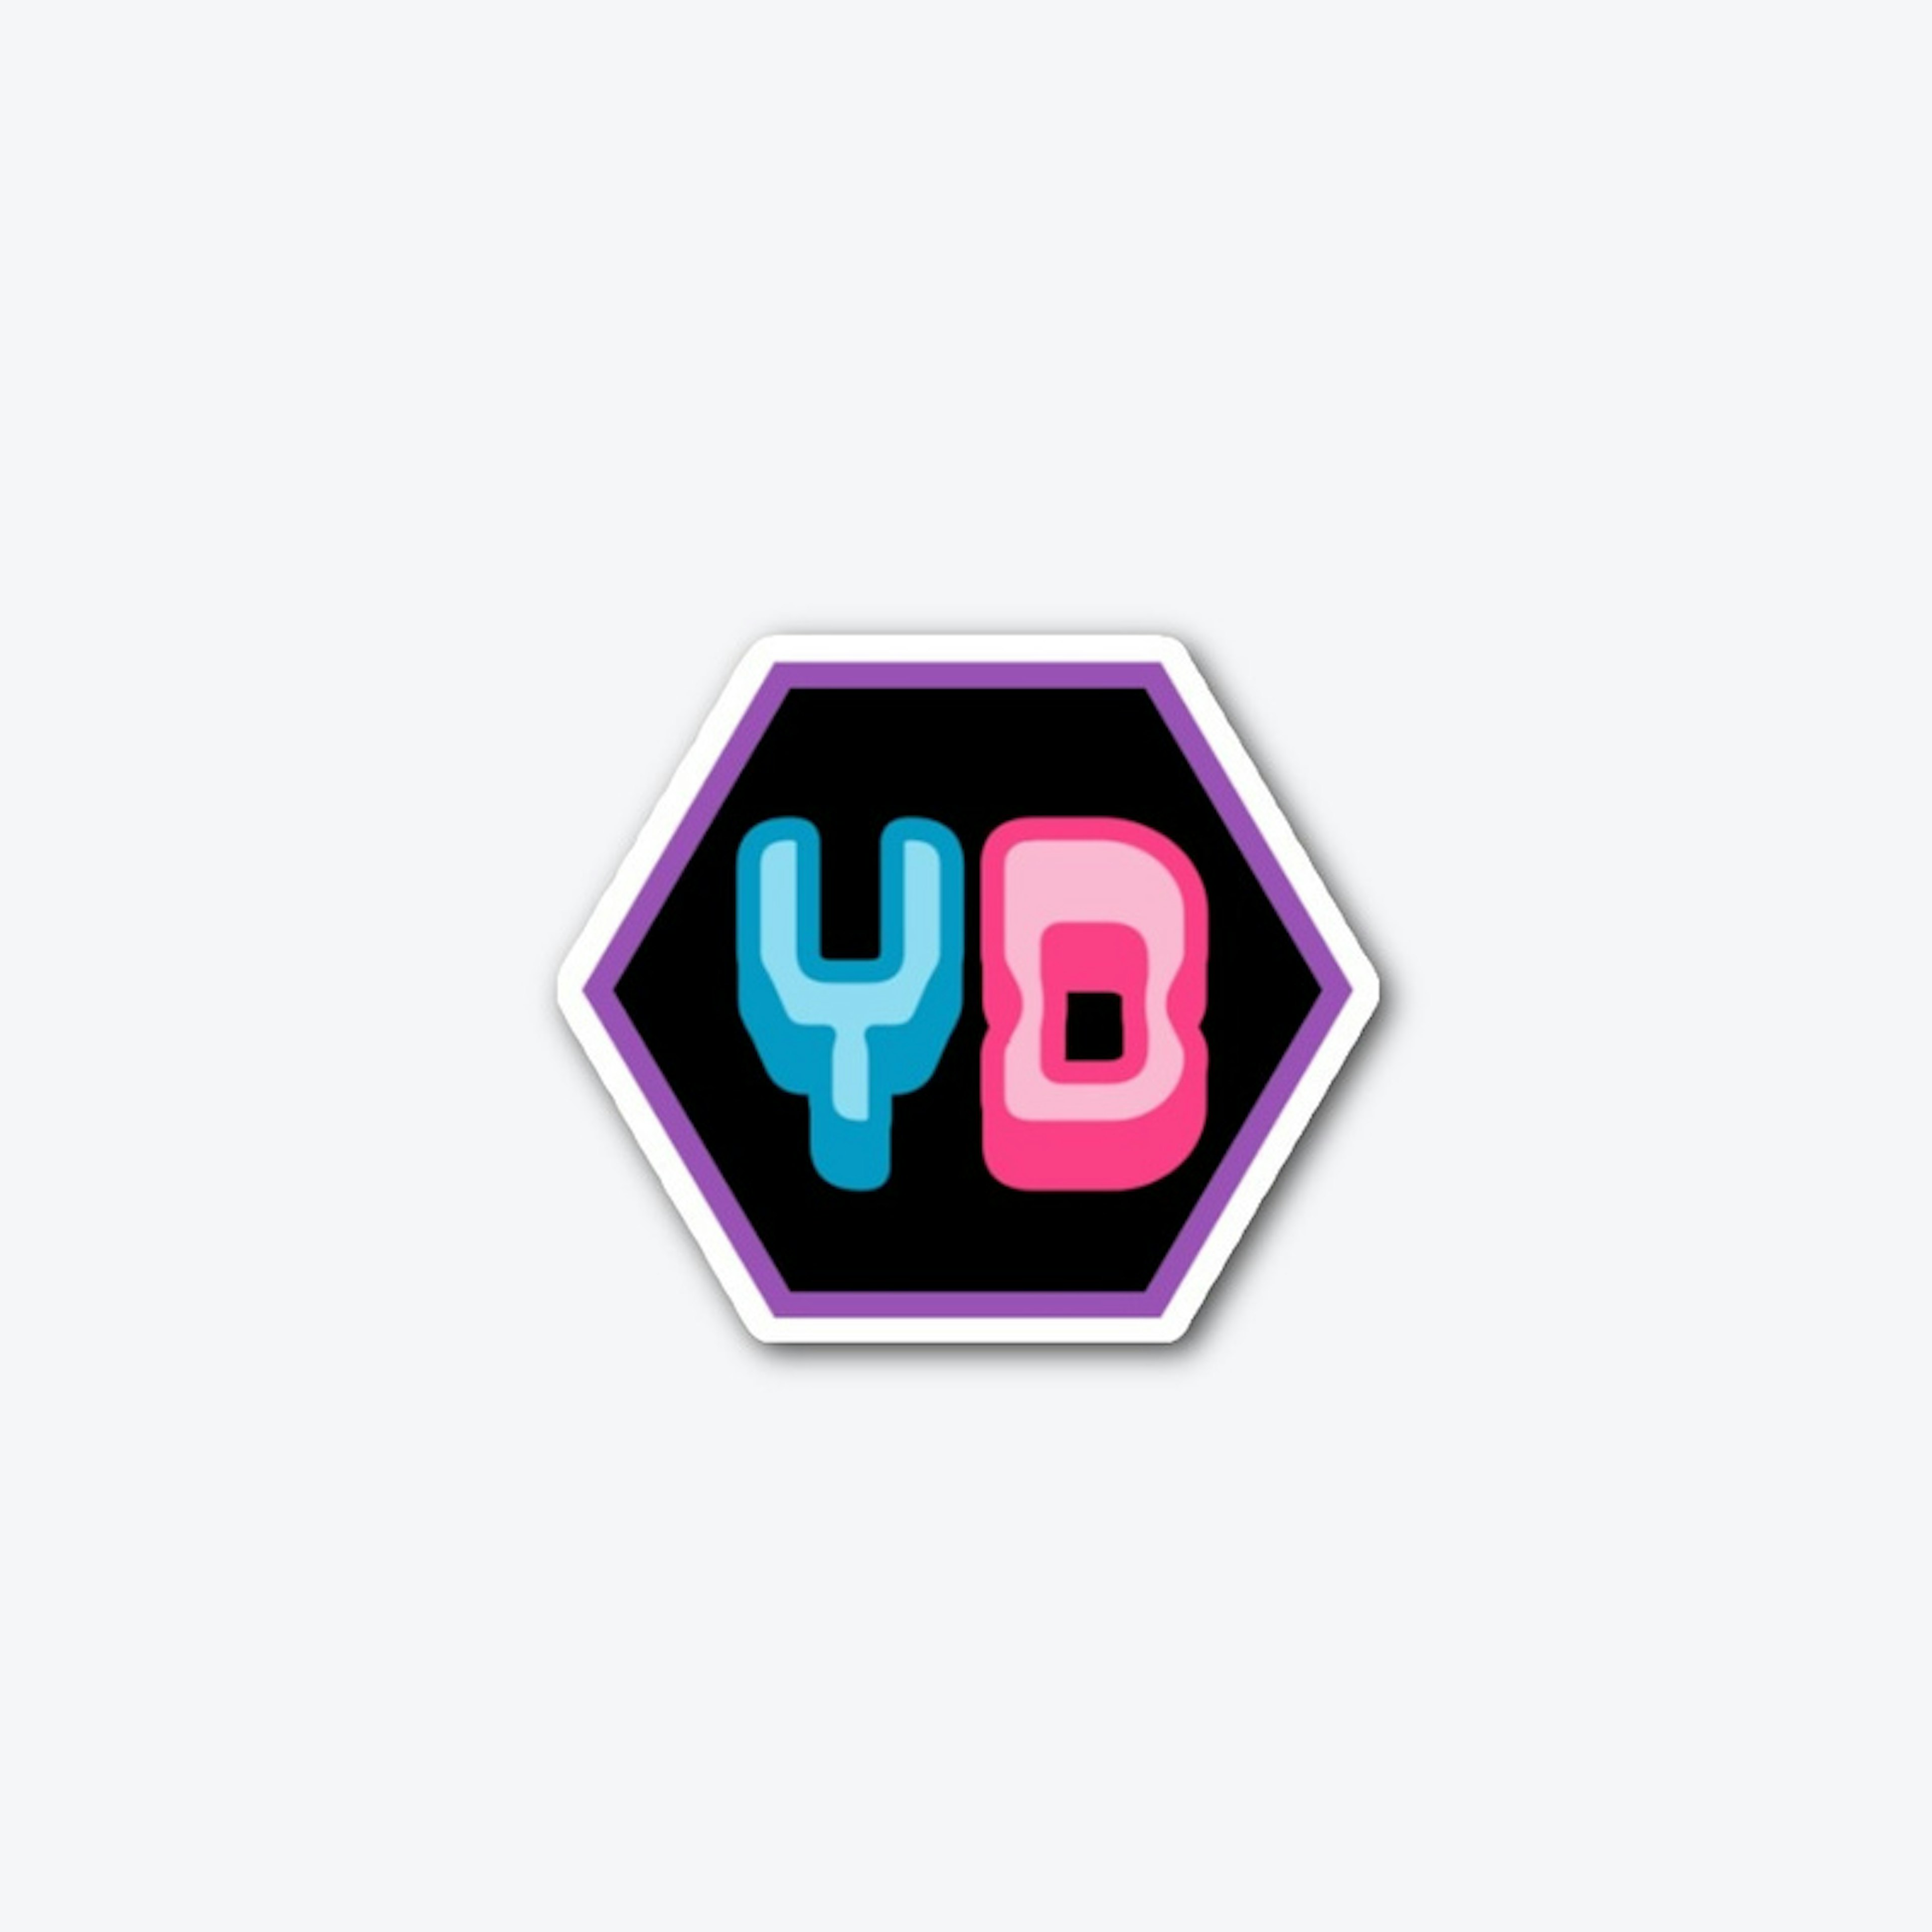 YD Minimal Logo